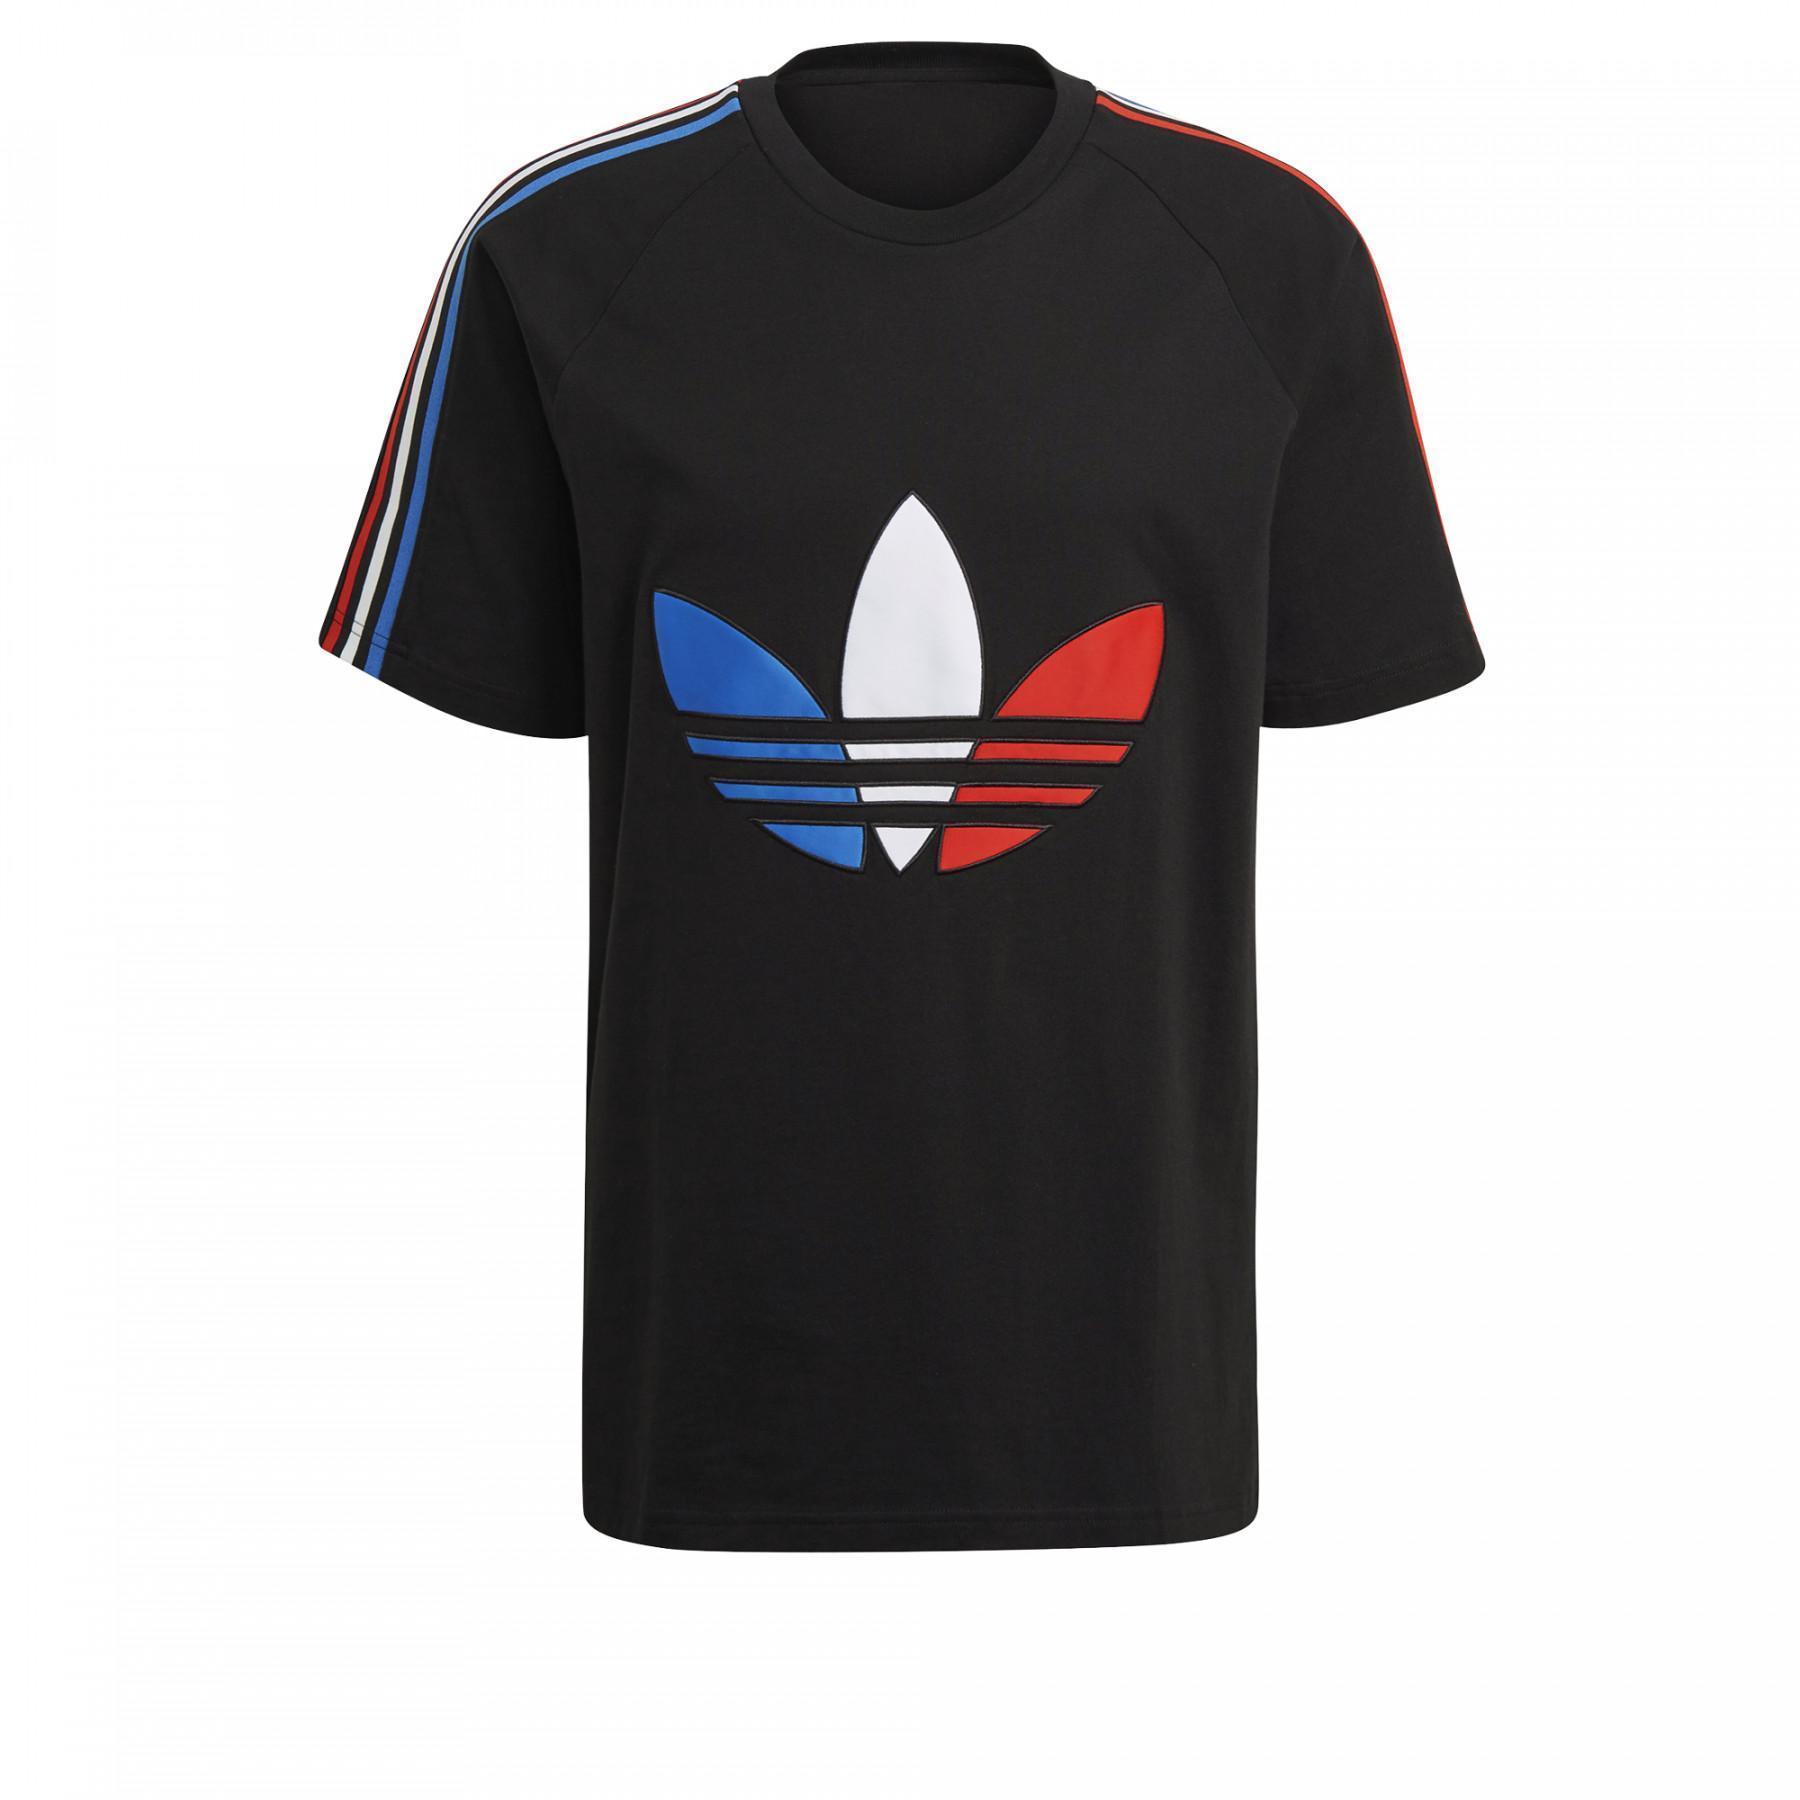 Maglietta Adidas tricolore logo trèfle